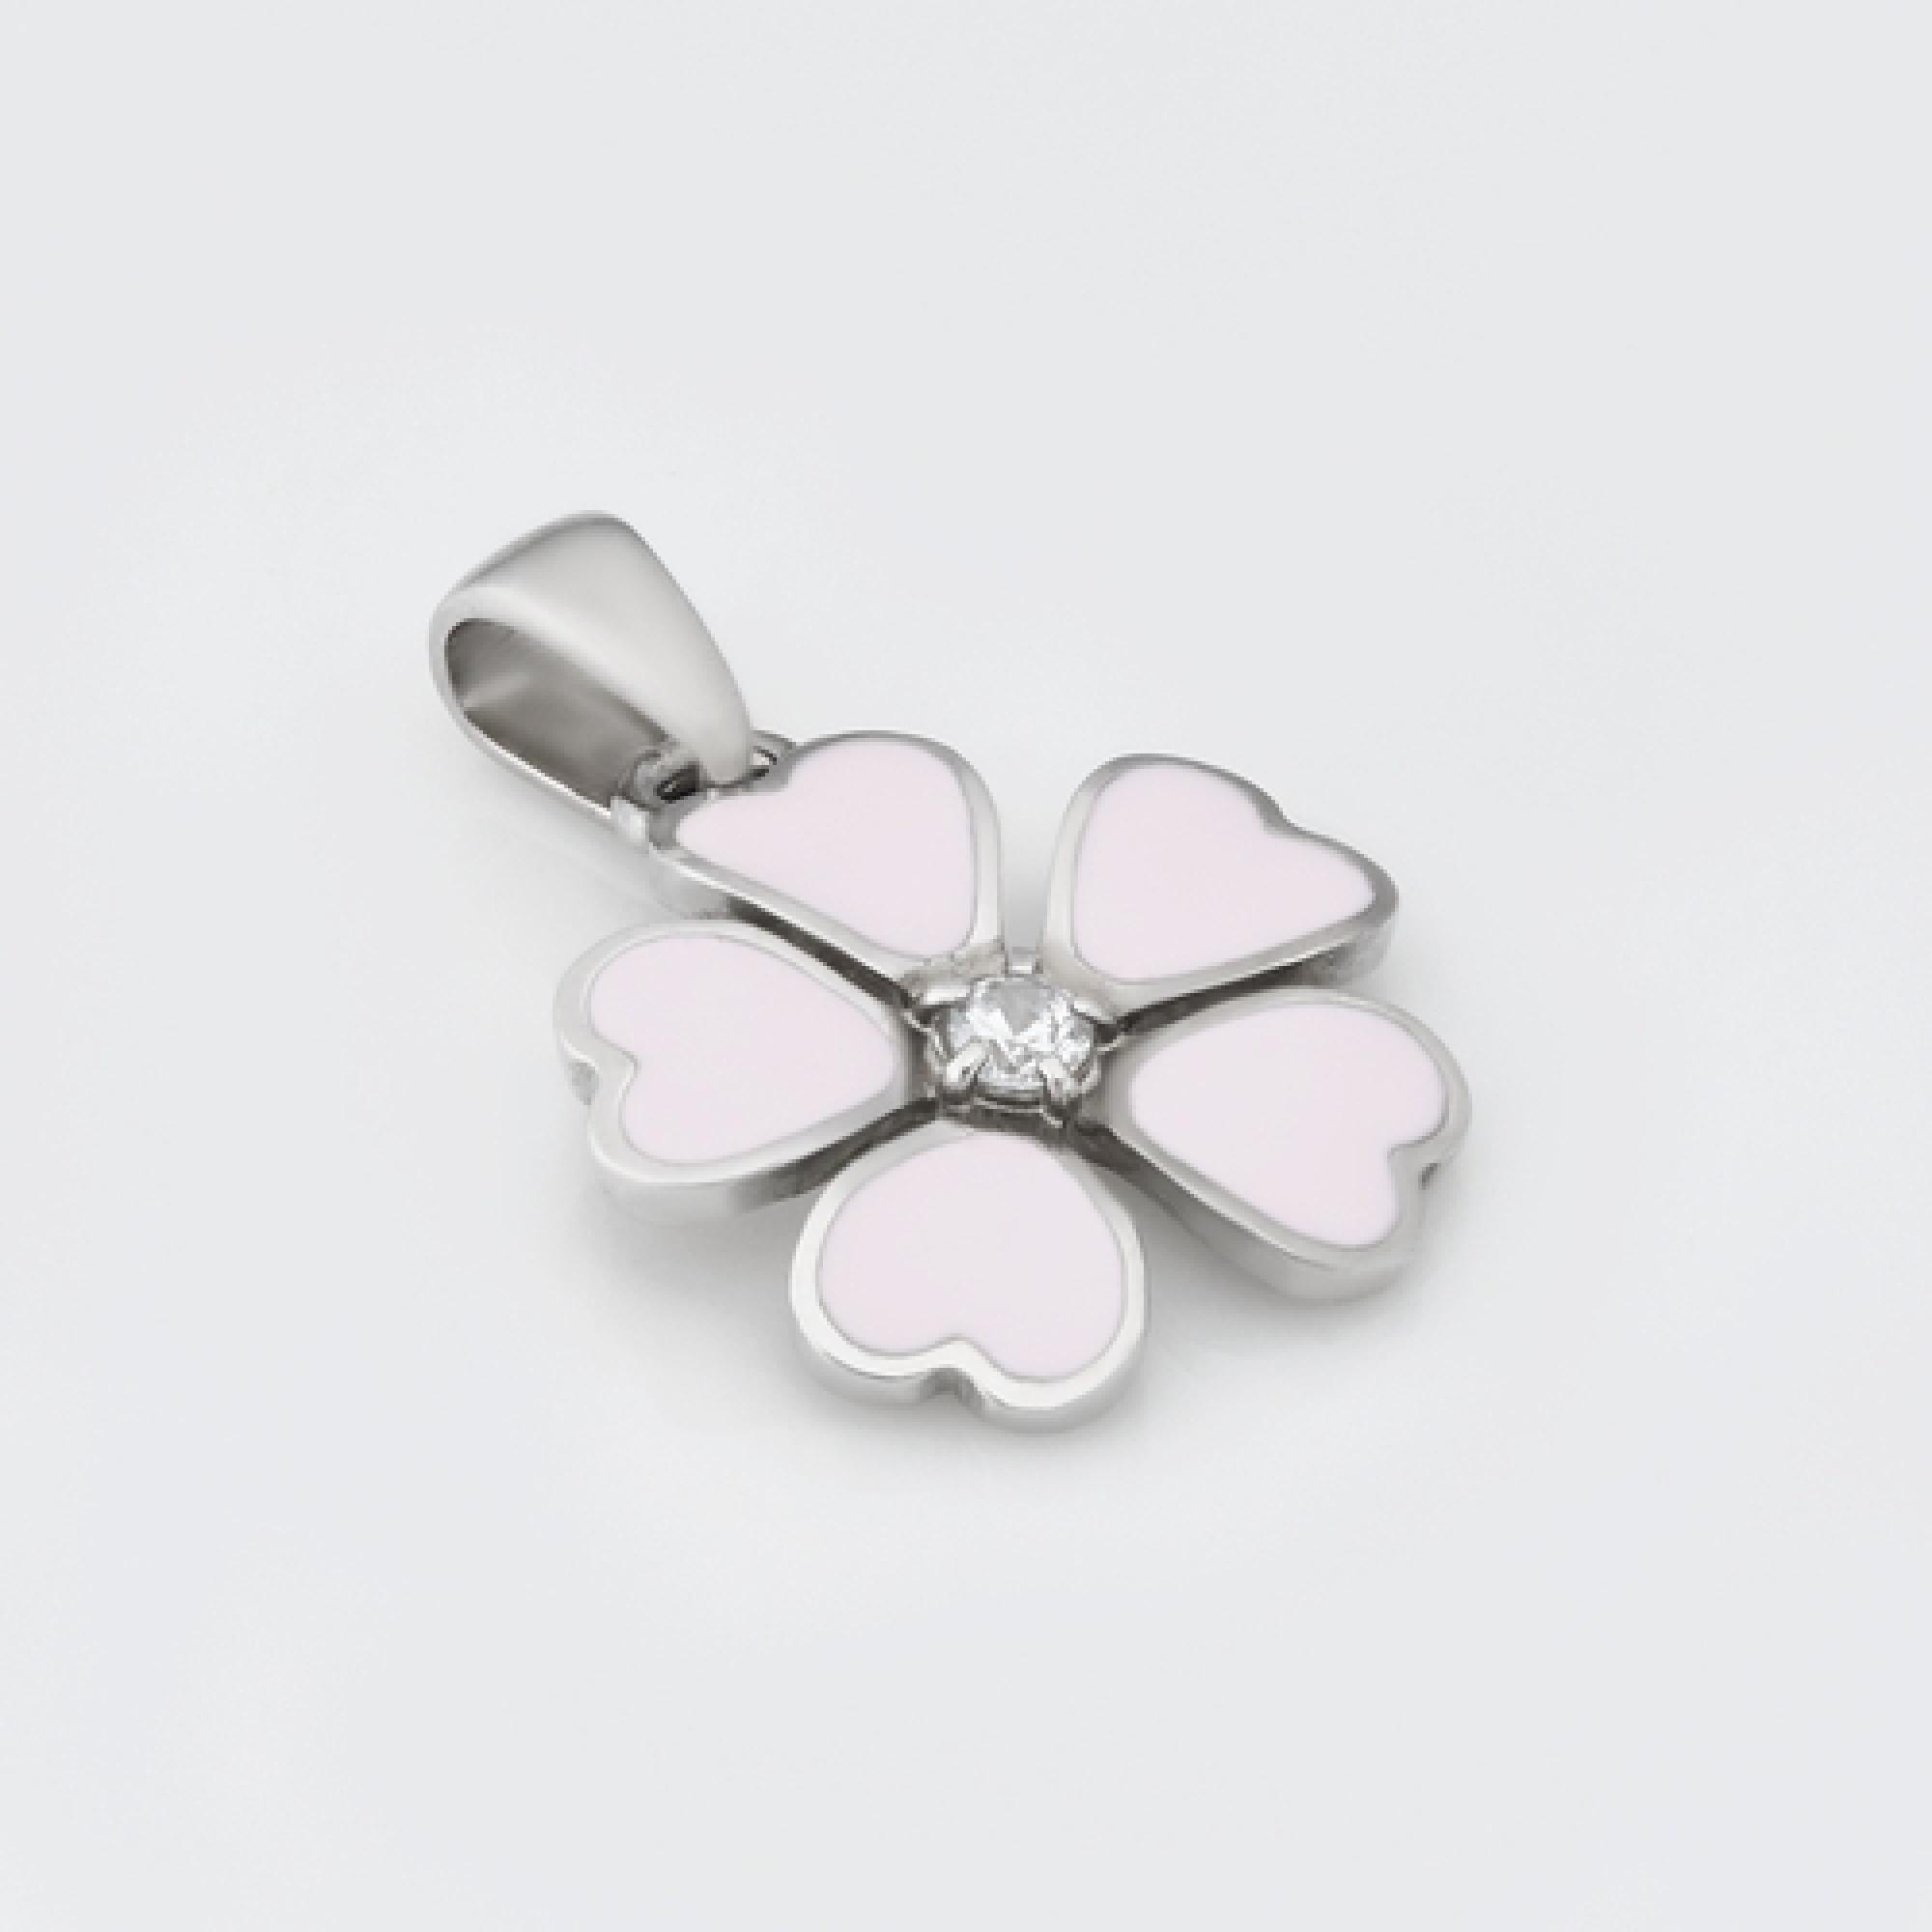  Срібний кулон Квітка (7150)